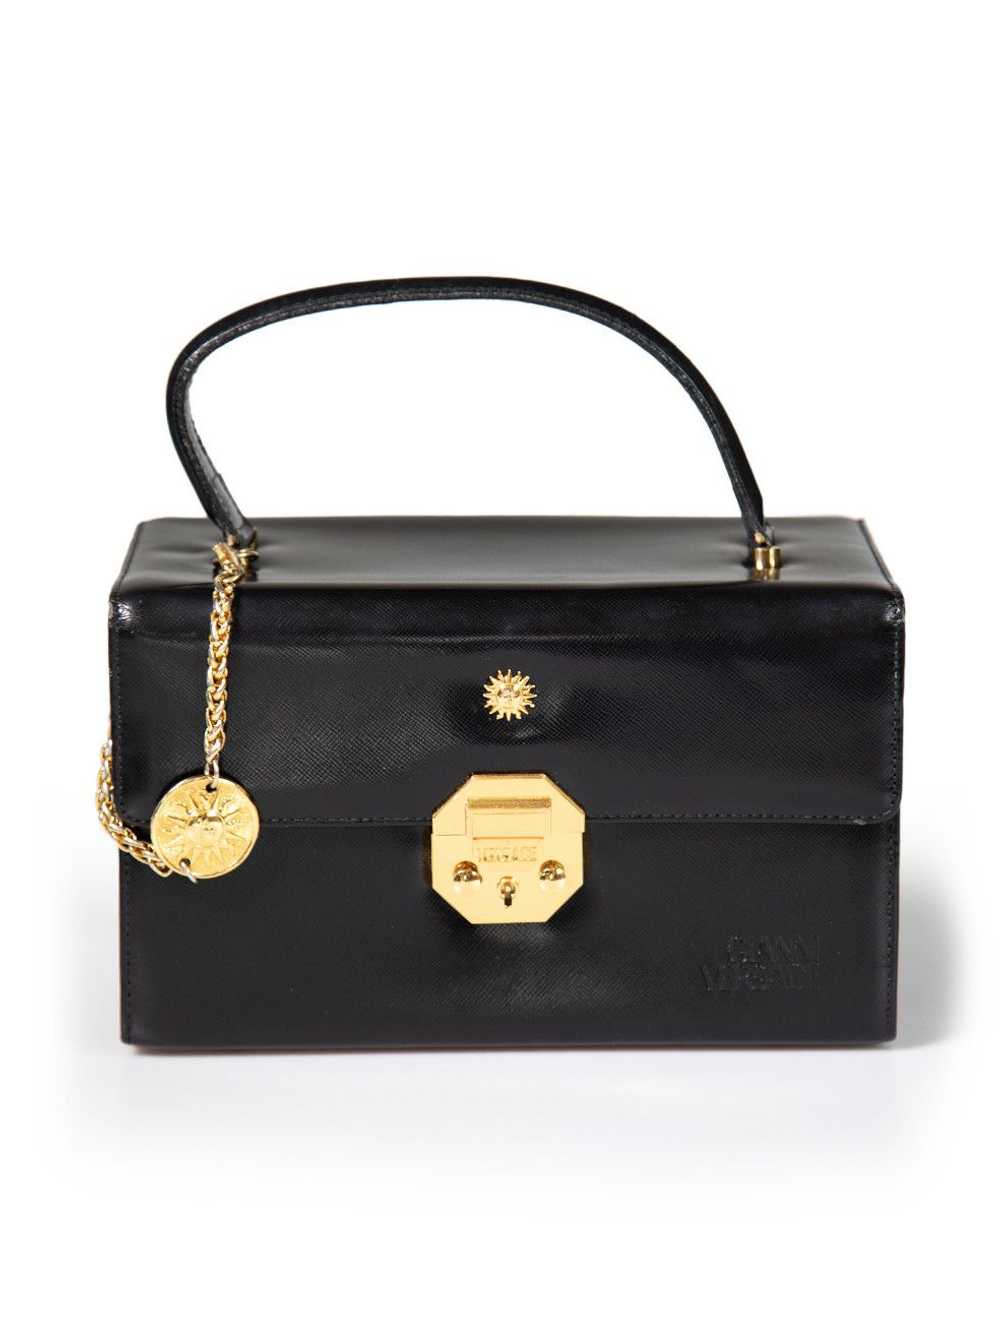 Versace Black Leather Vanity Top Handle Bag - image 1